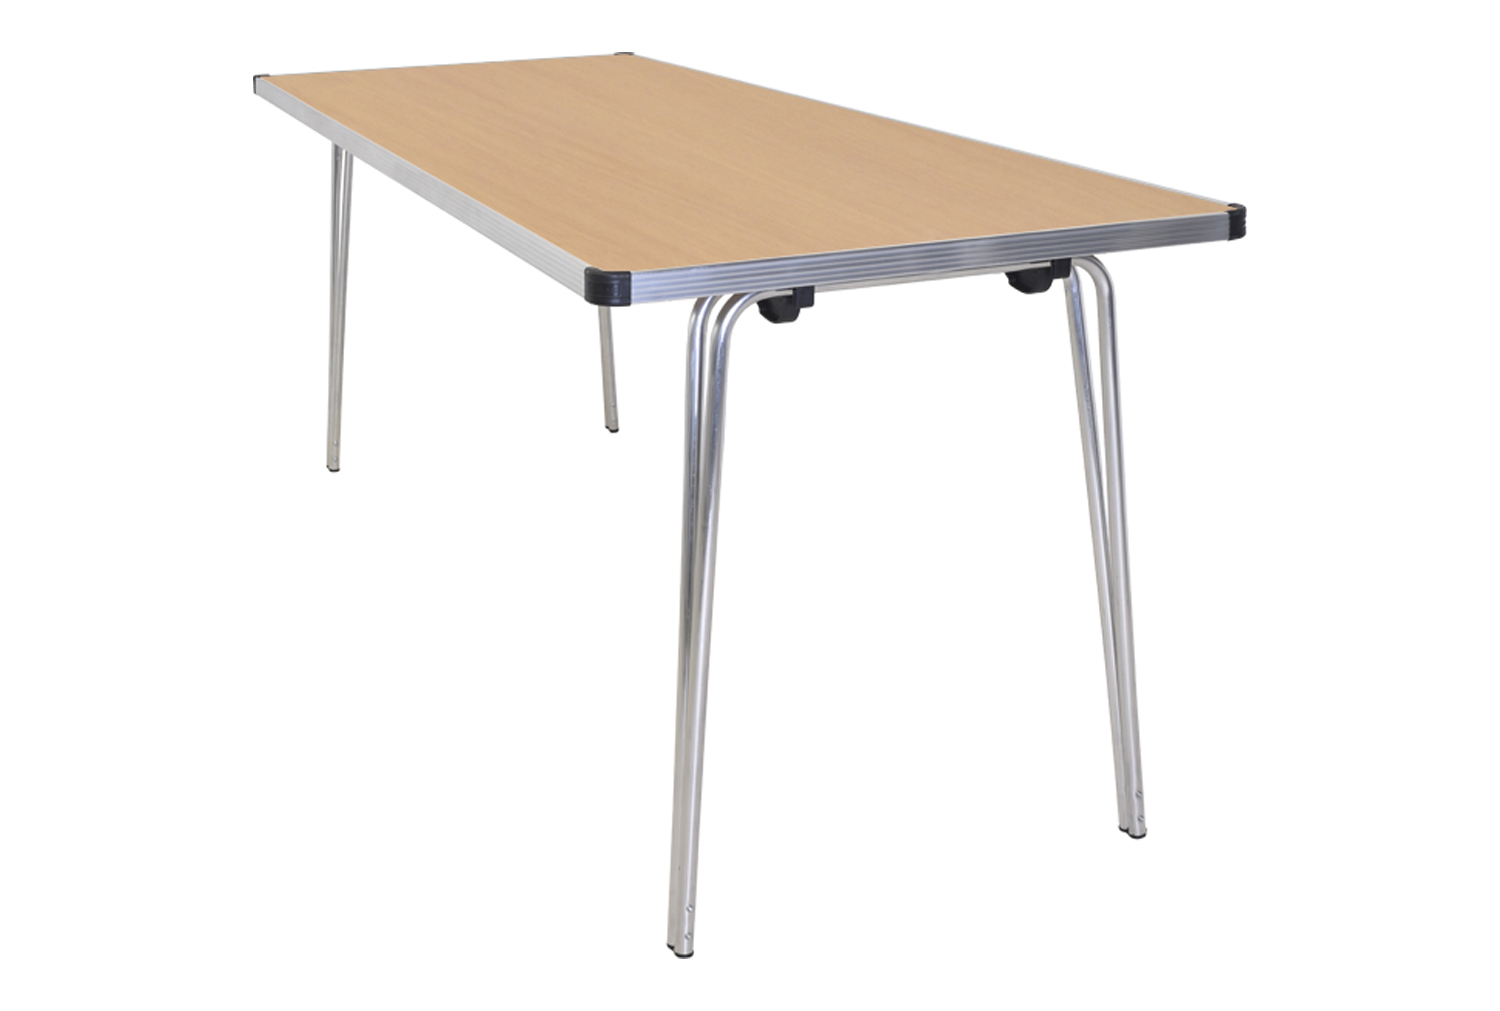 Gopak Contour Folding Table, 122wx69d (cm), Oak